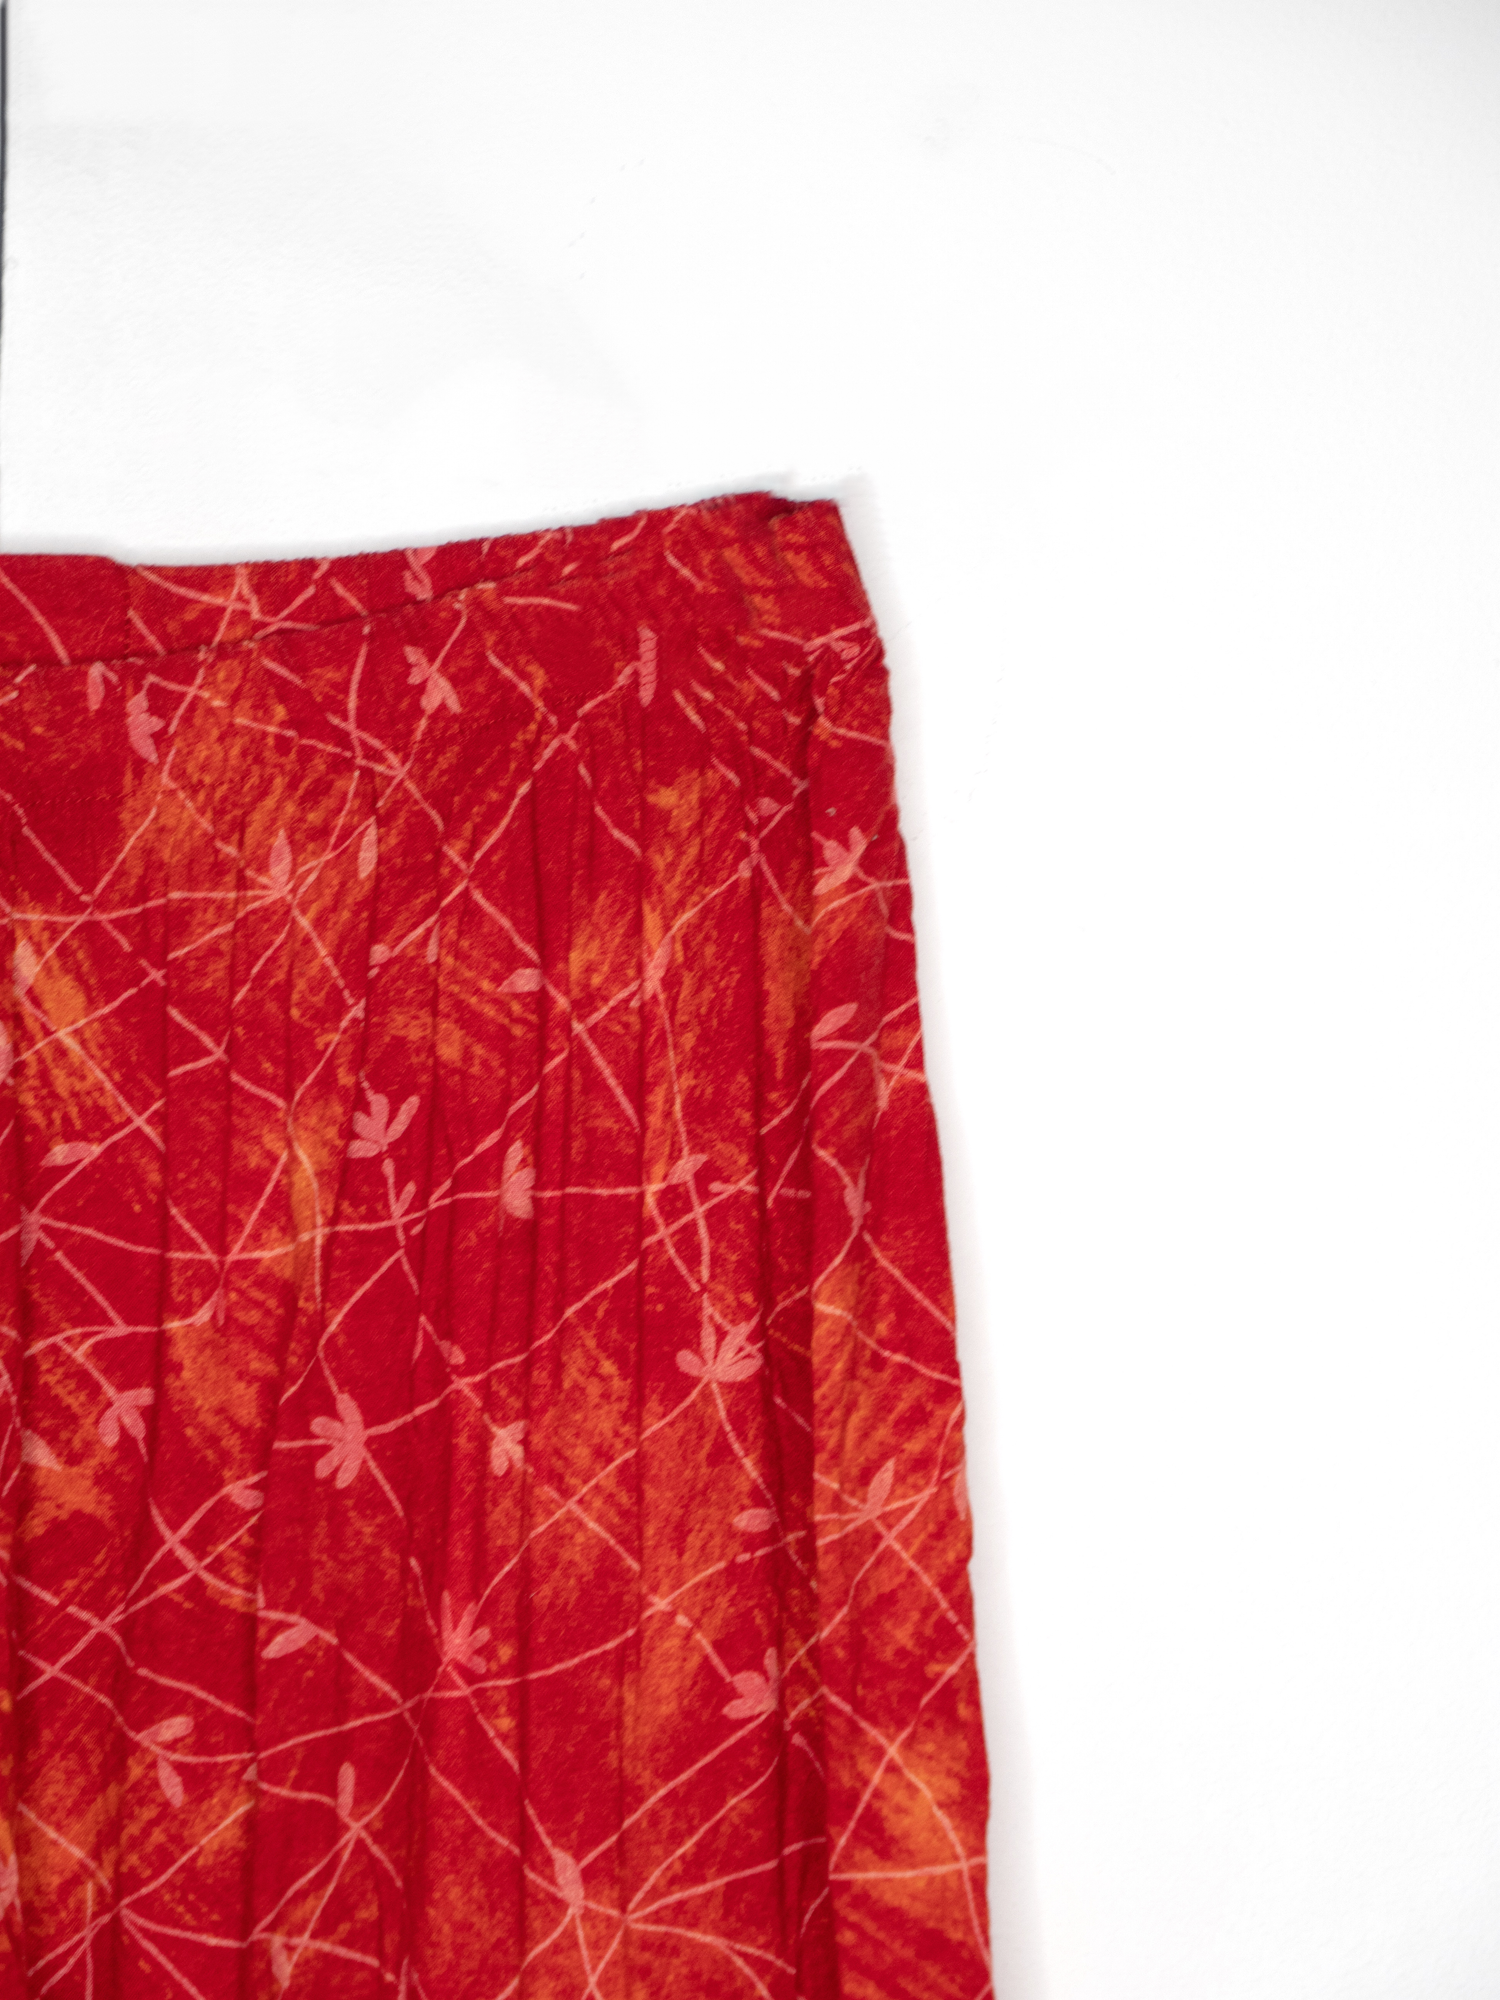 Jupe culotte rouge à fleurs - zimfriperie